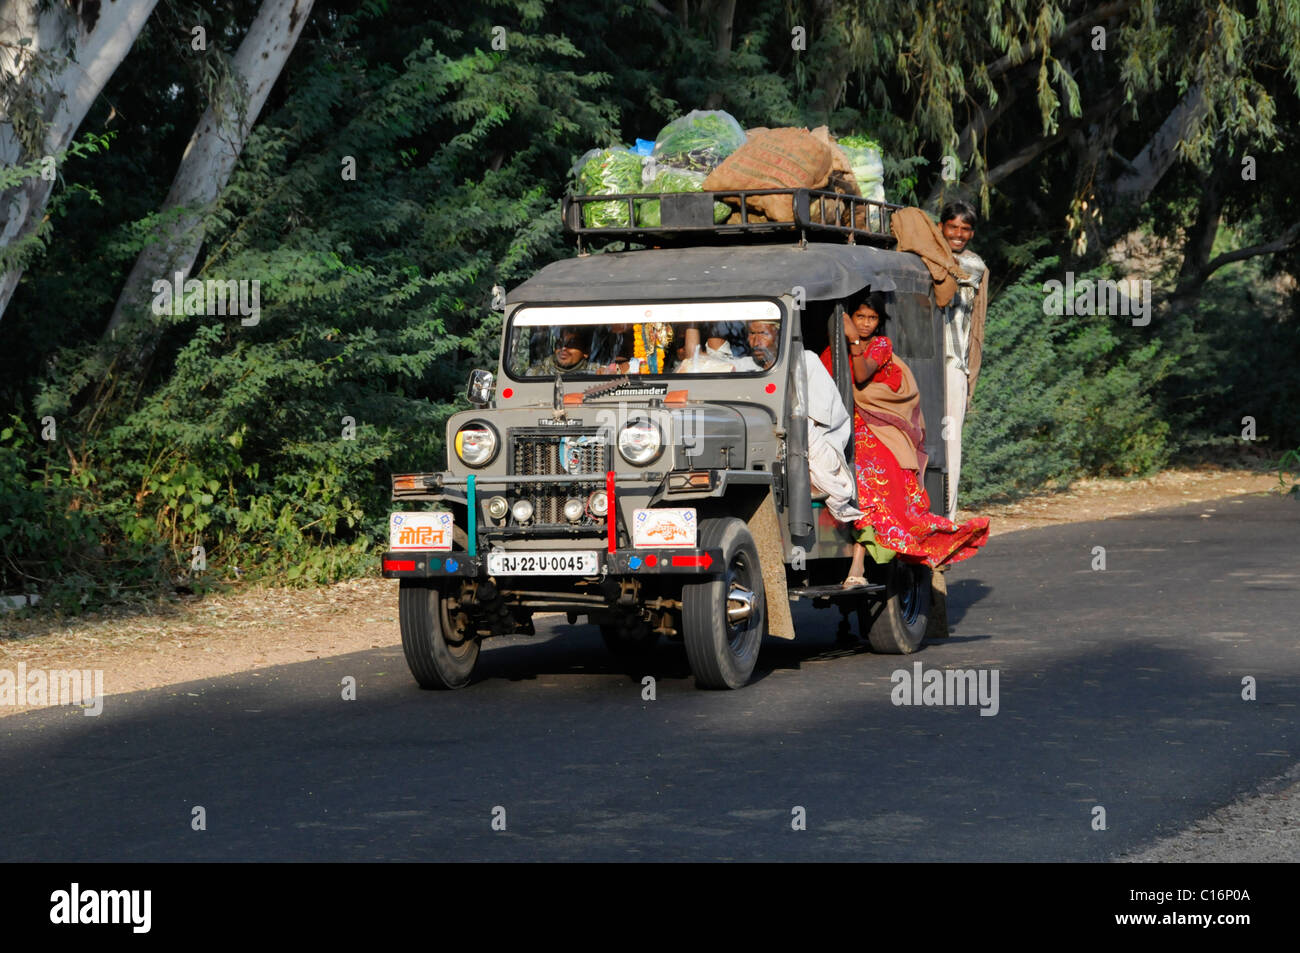 Grossfamilie In Einem Auto In Der Nahe Von Pushkar Rajasthan Nordindien Asien Stockfotografie Alamy